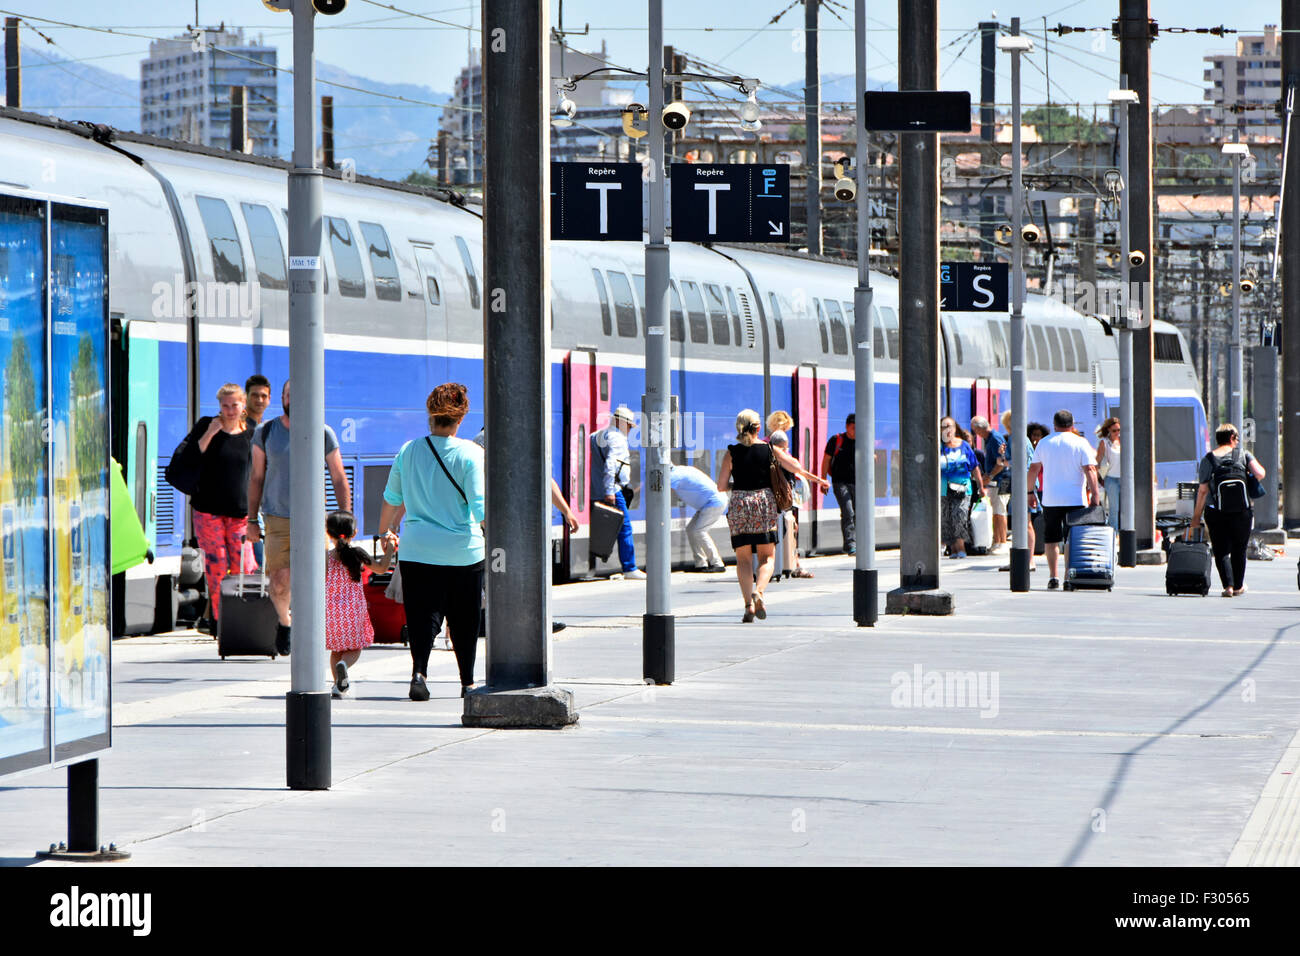 Französischen SNCF TGV-high-Speed-Personenzug bei Marseille Saint Charles France Zug Bahnhof mit Reisenden auf Plattform mit Gepäck Sonnentag Stockfoto